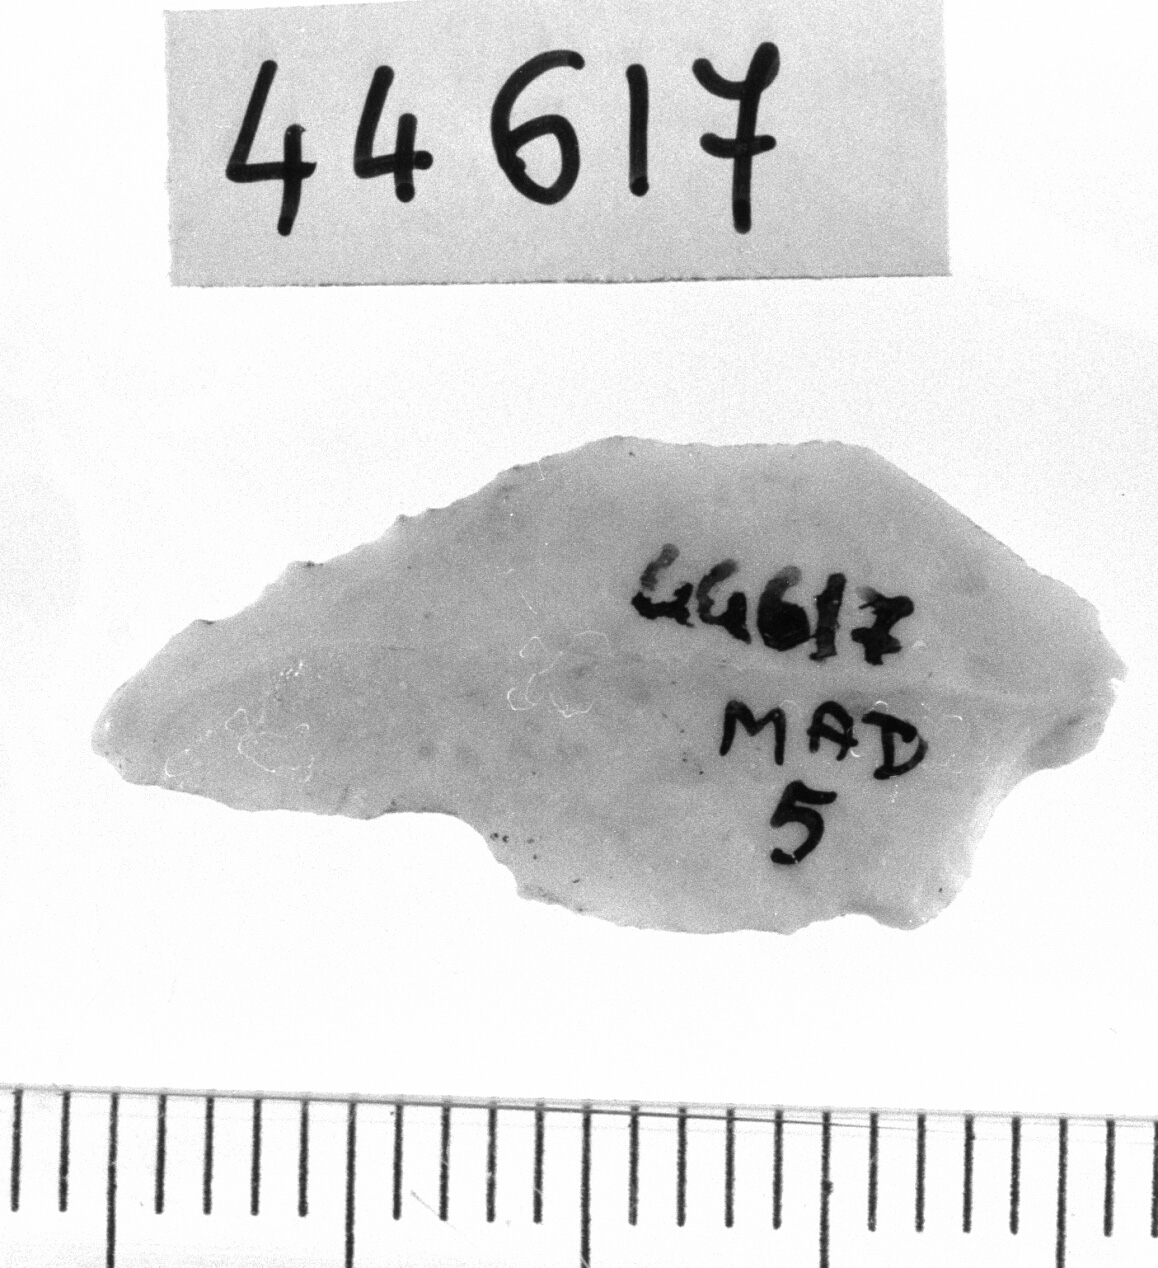 microbulino opposto a ritocco marginale (Neolitico)